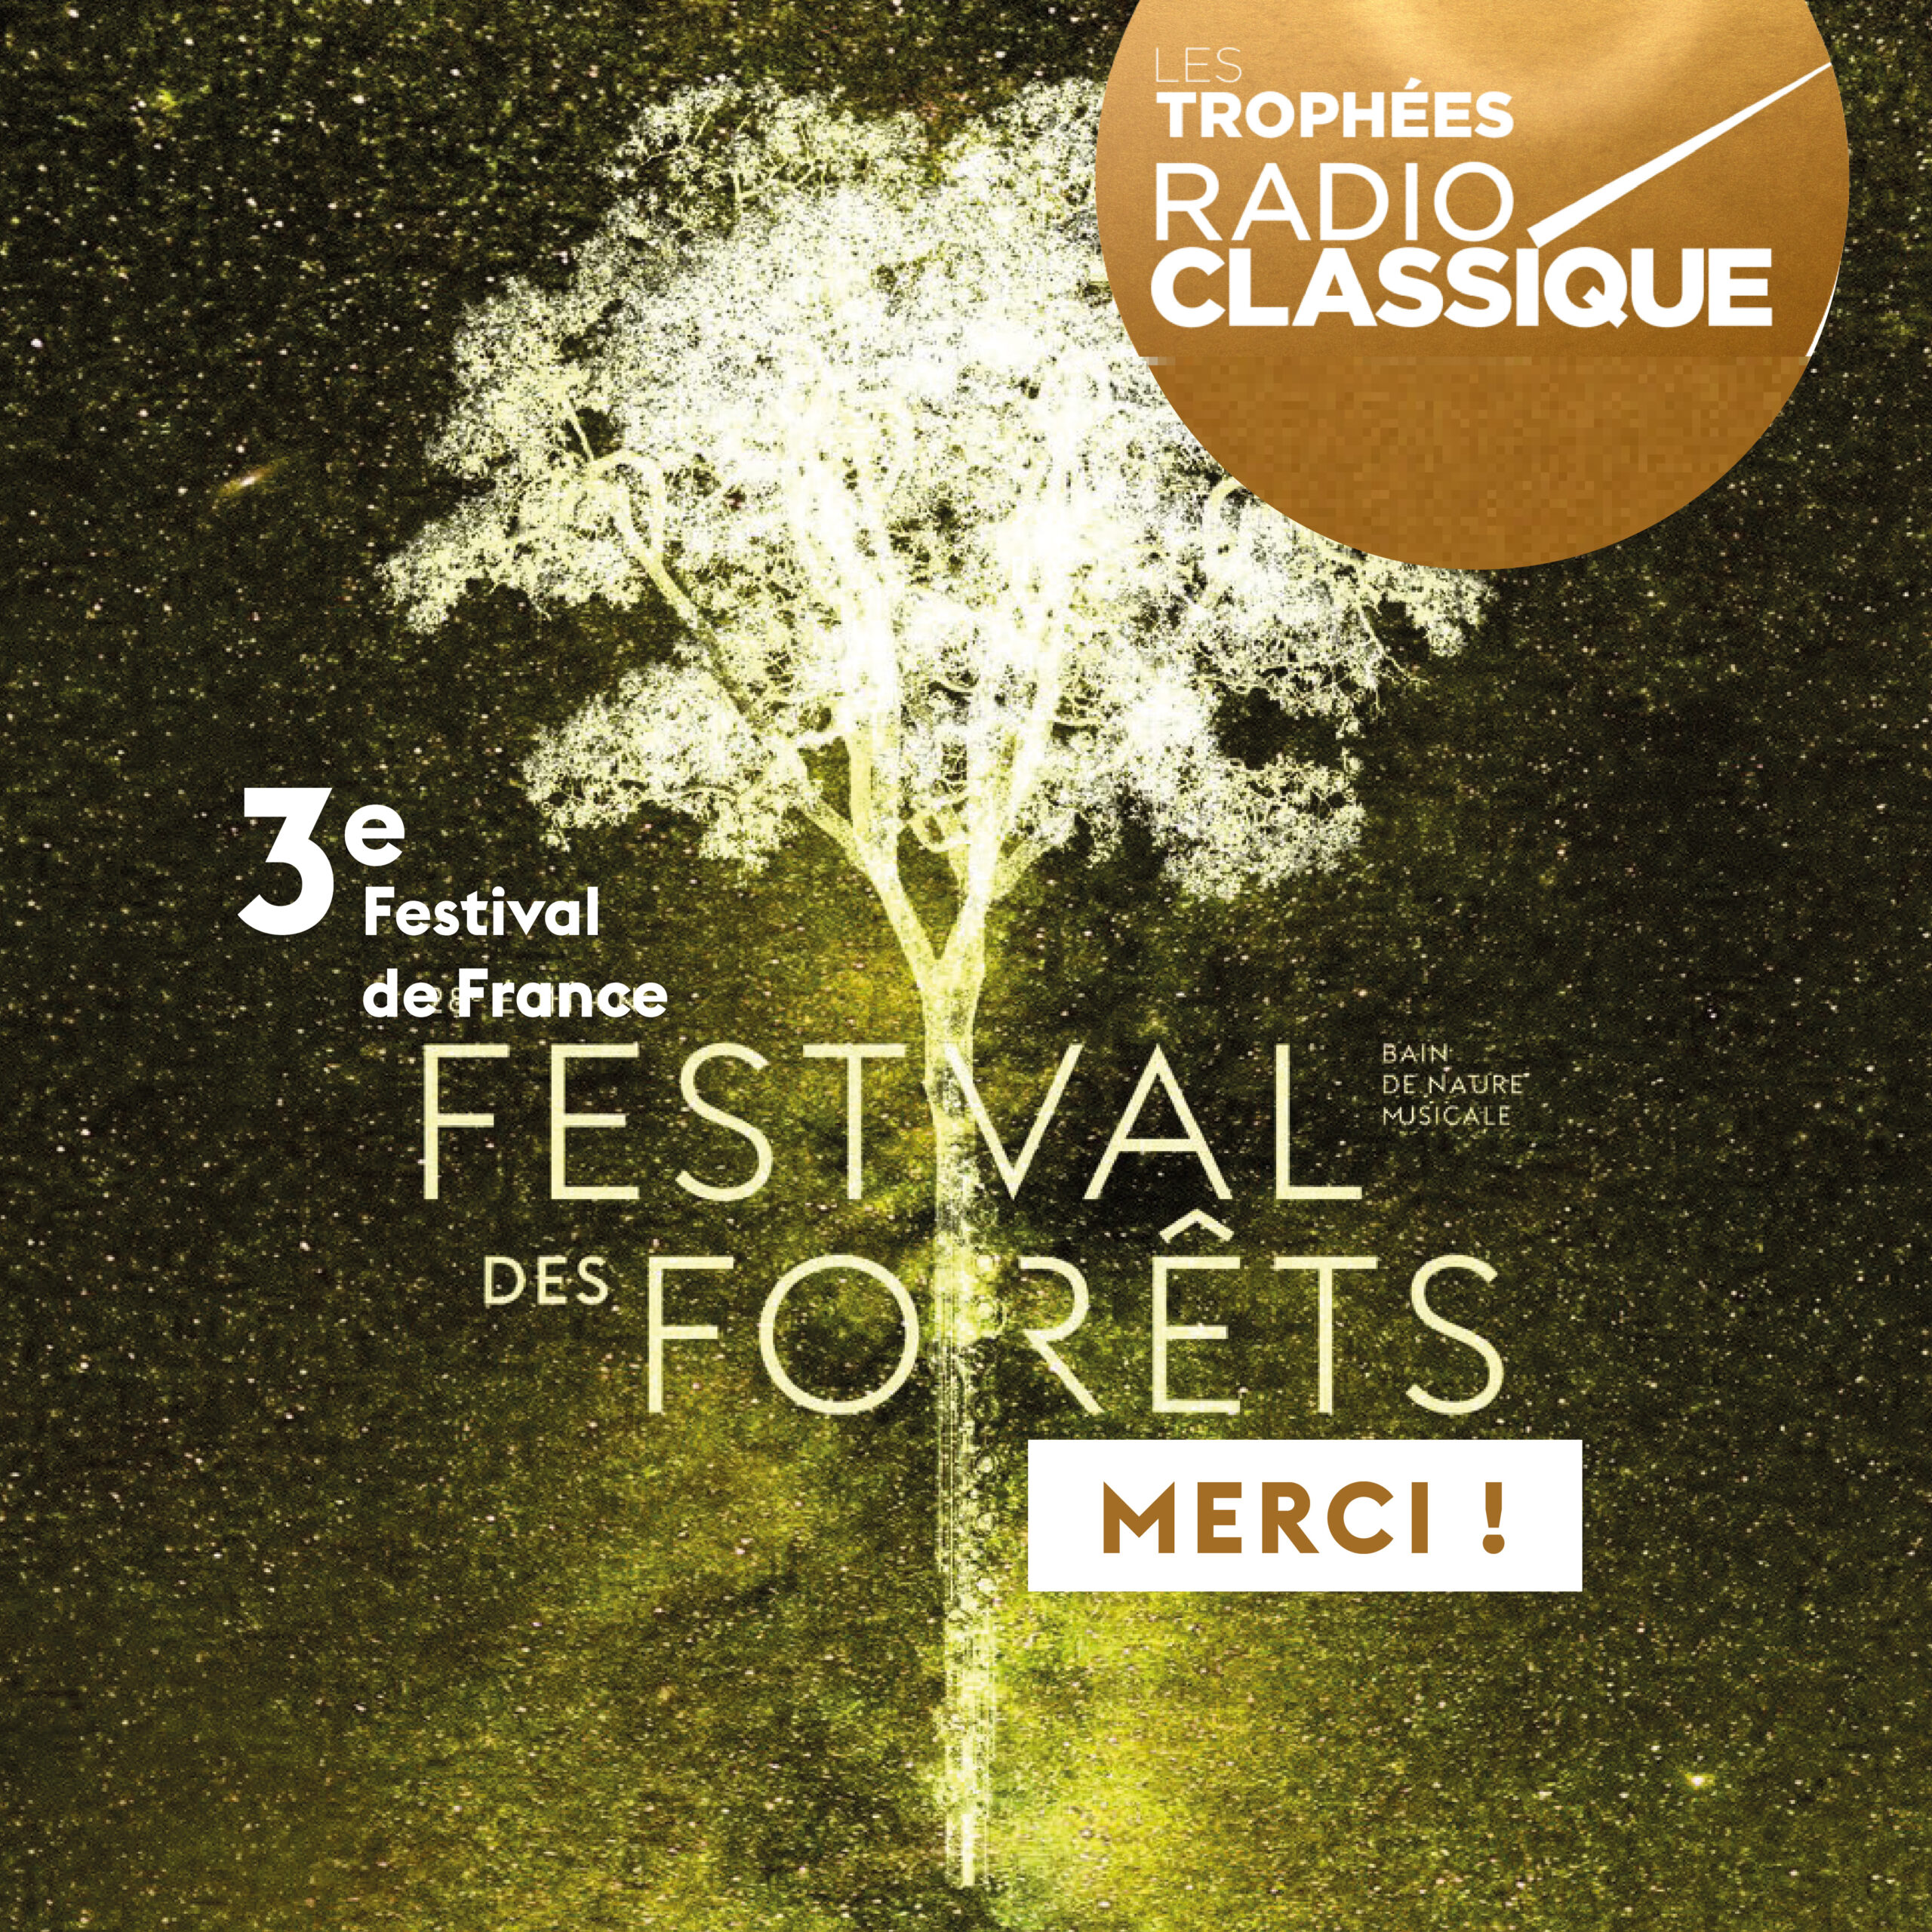 Trophées Radio Classique : le Festival des Forêts nommé parmi les trois premiers Festivals de France !